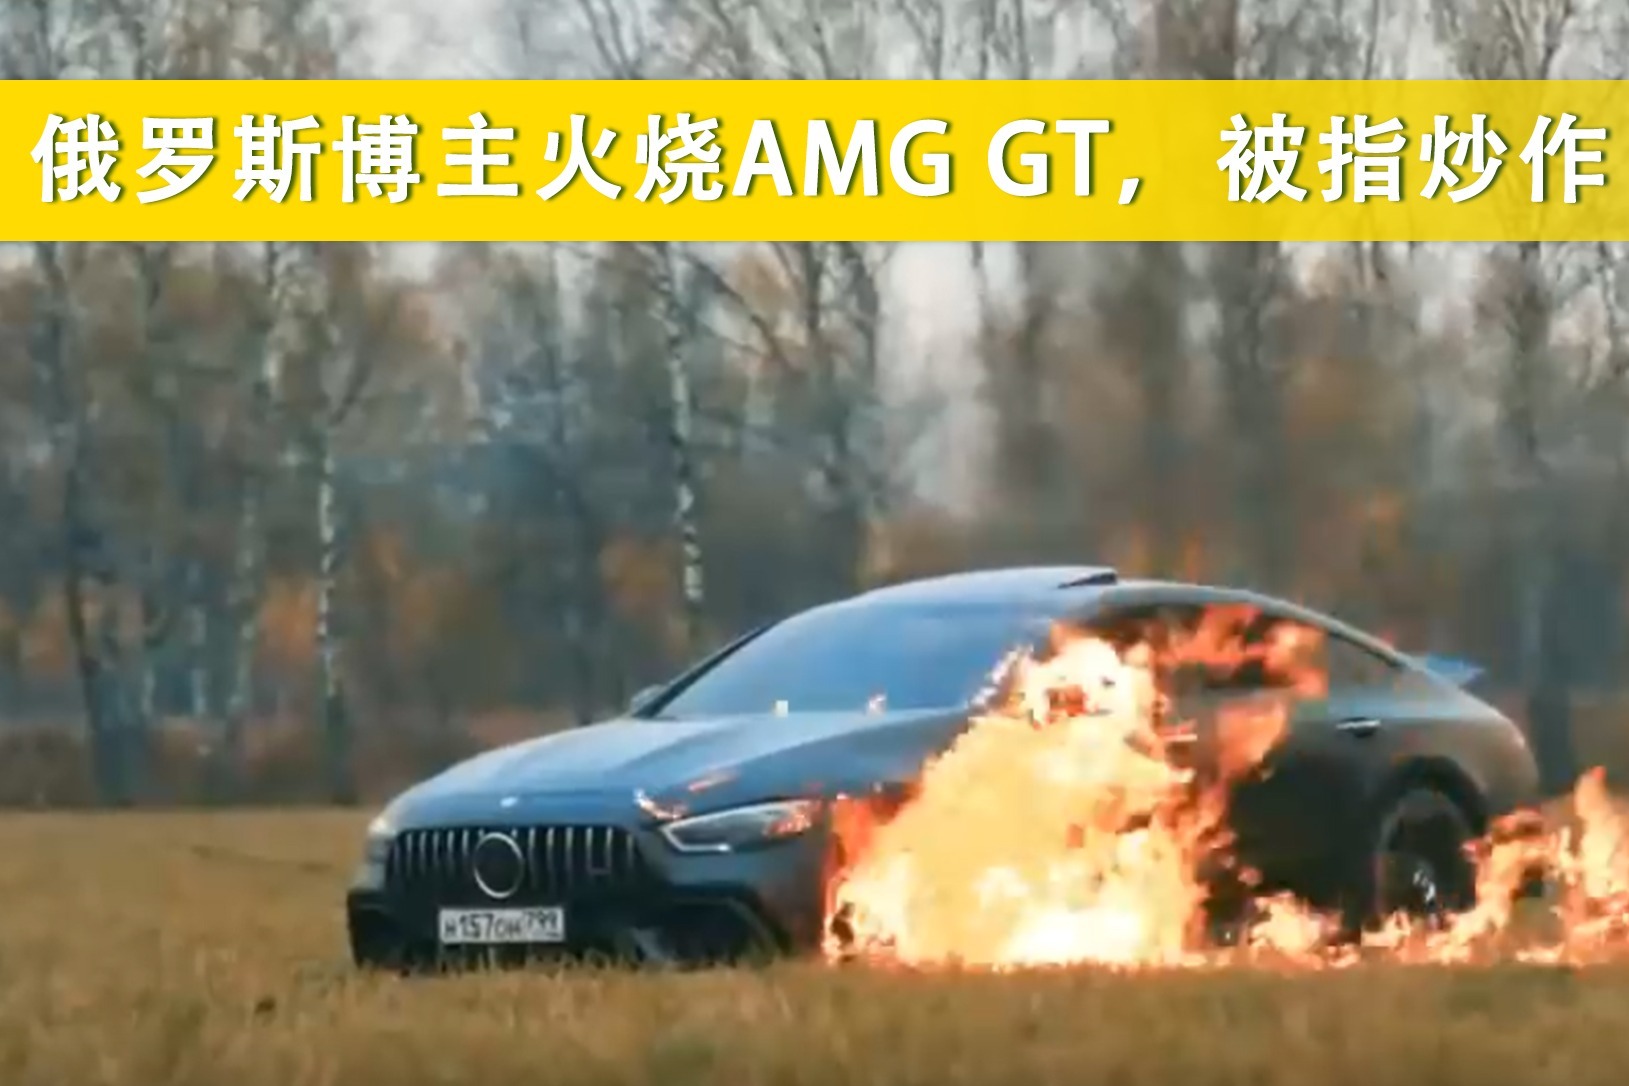 俄罗斯博主火烧AMG GT，被指炒作?